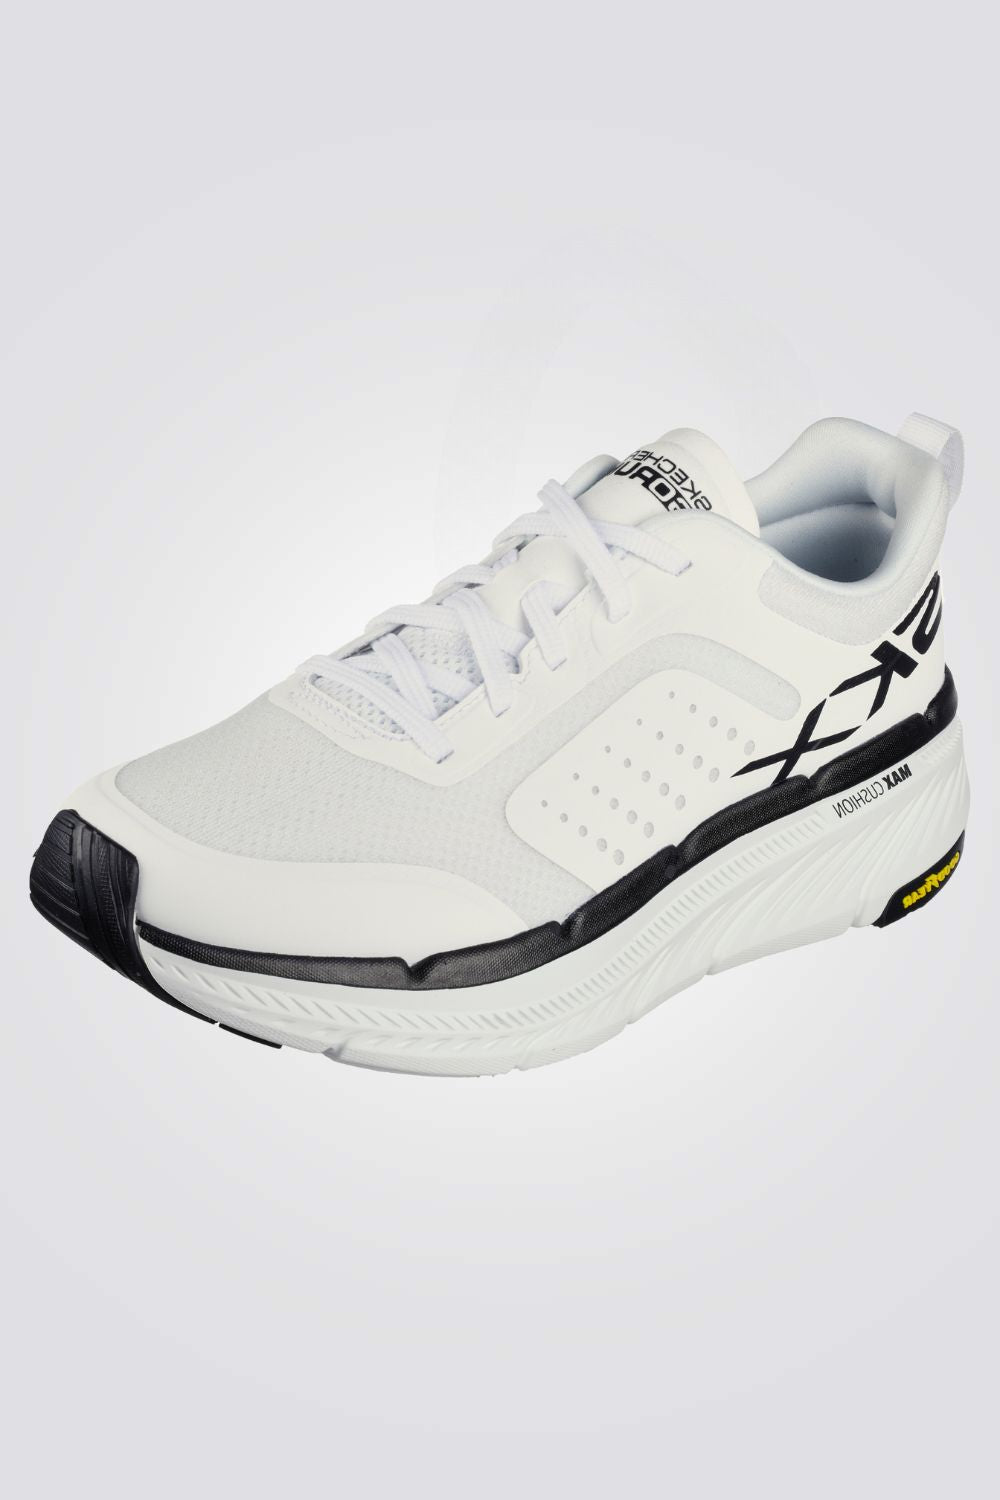 נעלי ספורט לגברים GOrun Max Cushioning Premier 2.0 - Residence בצבע לבן ושחור